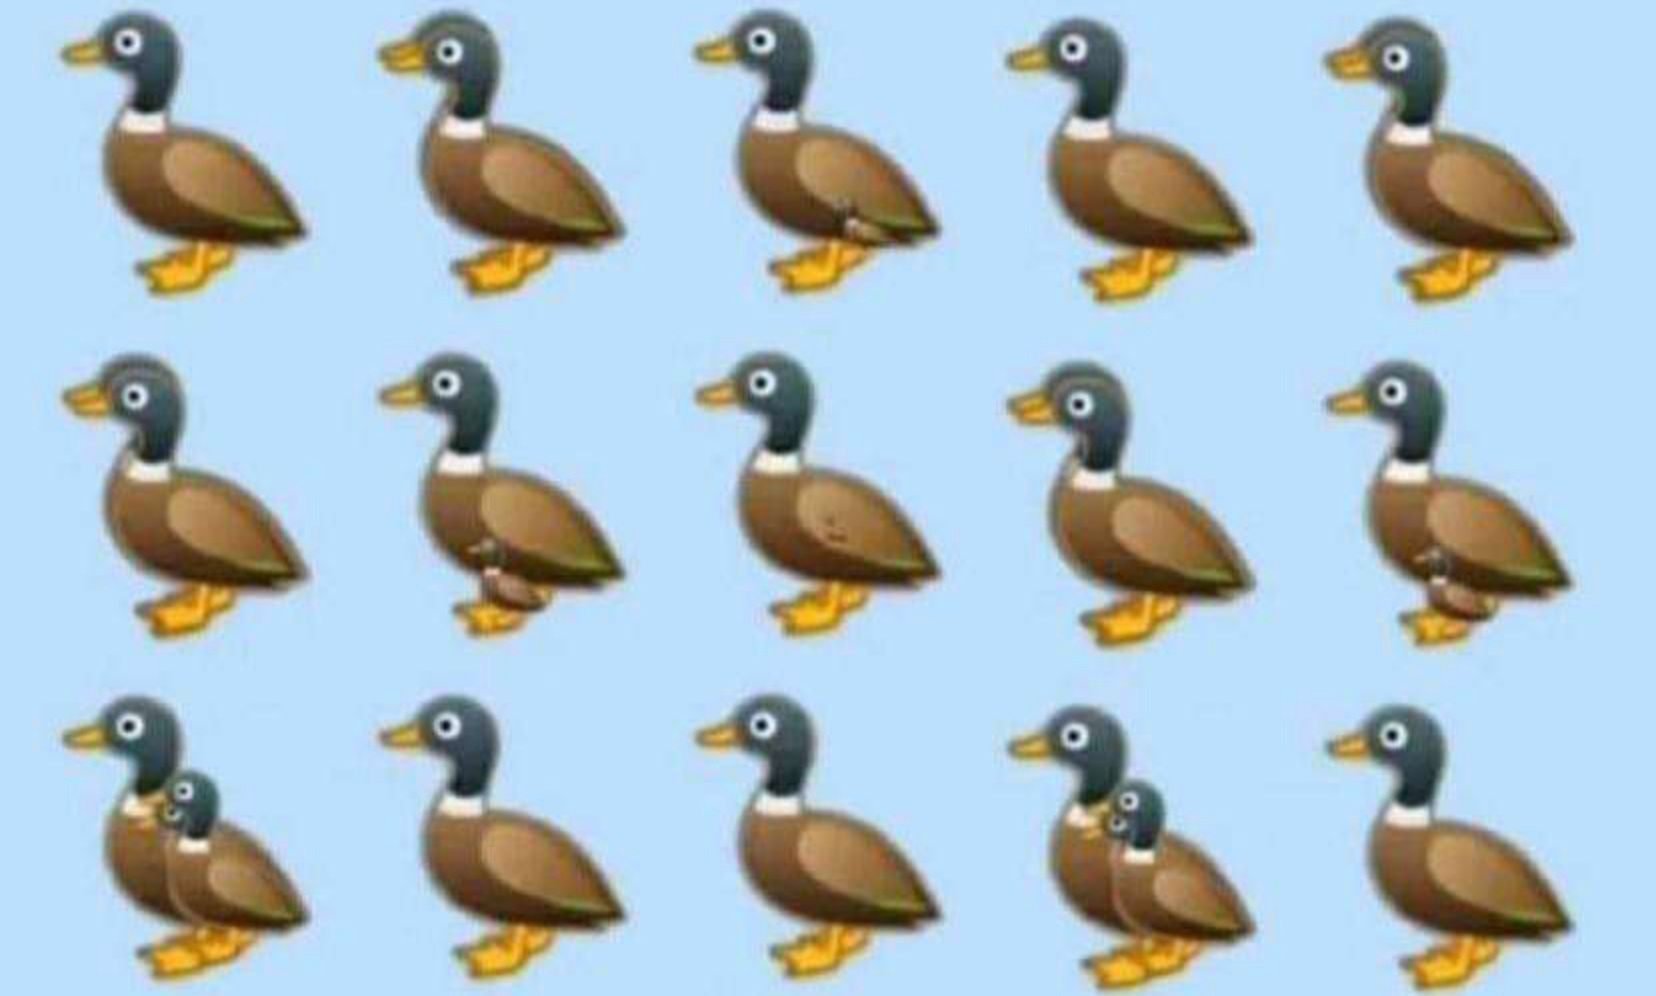 Ile kaczek widzisz na obrazku? Prosta zagadka? Można się zdziwić